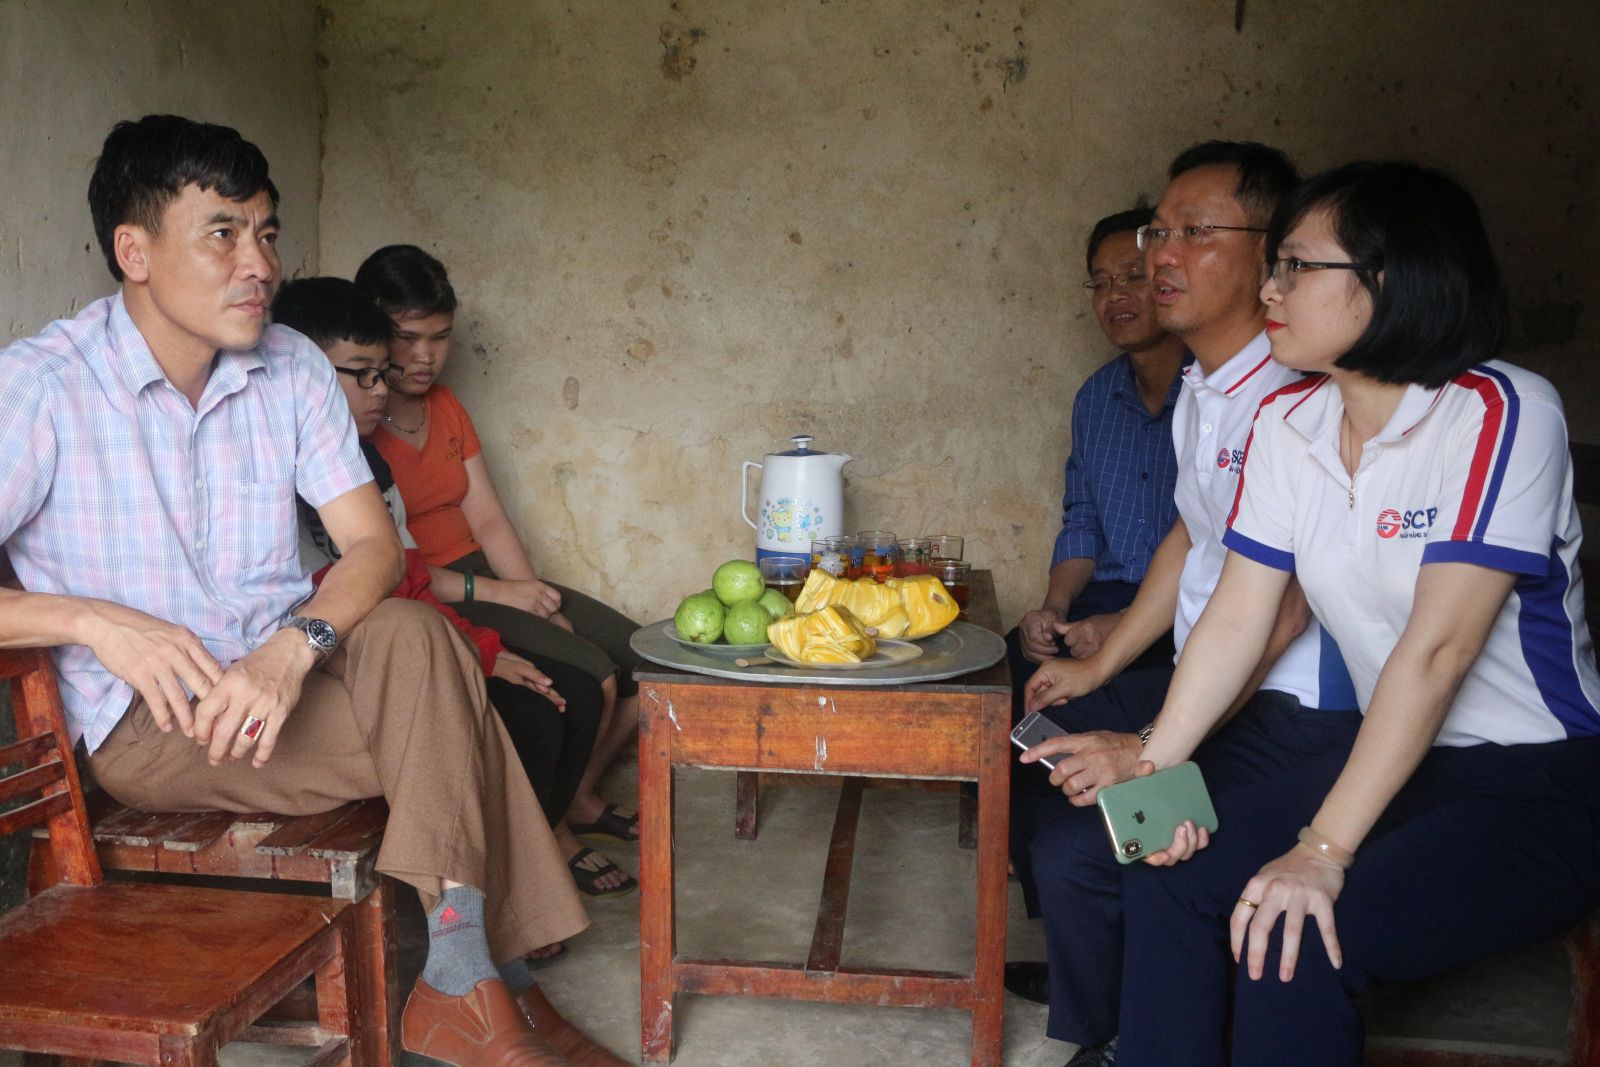 Đại diện SCB Nghệ An trao tặng 50 triệu đồng cho gia đình Chị Nguyễn Thị Tâm có hoàn cảnh đặc biệt khó khăn tại thôn Ngọc Liên, xã Kim Thành, huyện Yên Thành, Nghệ An.